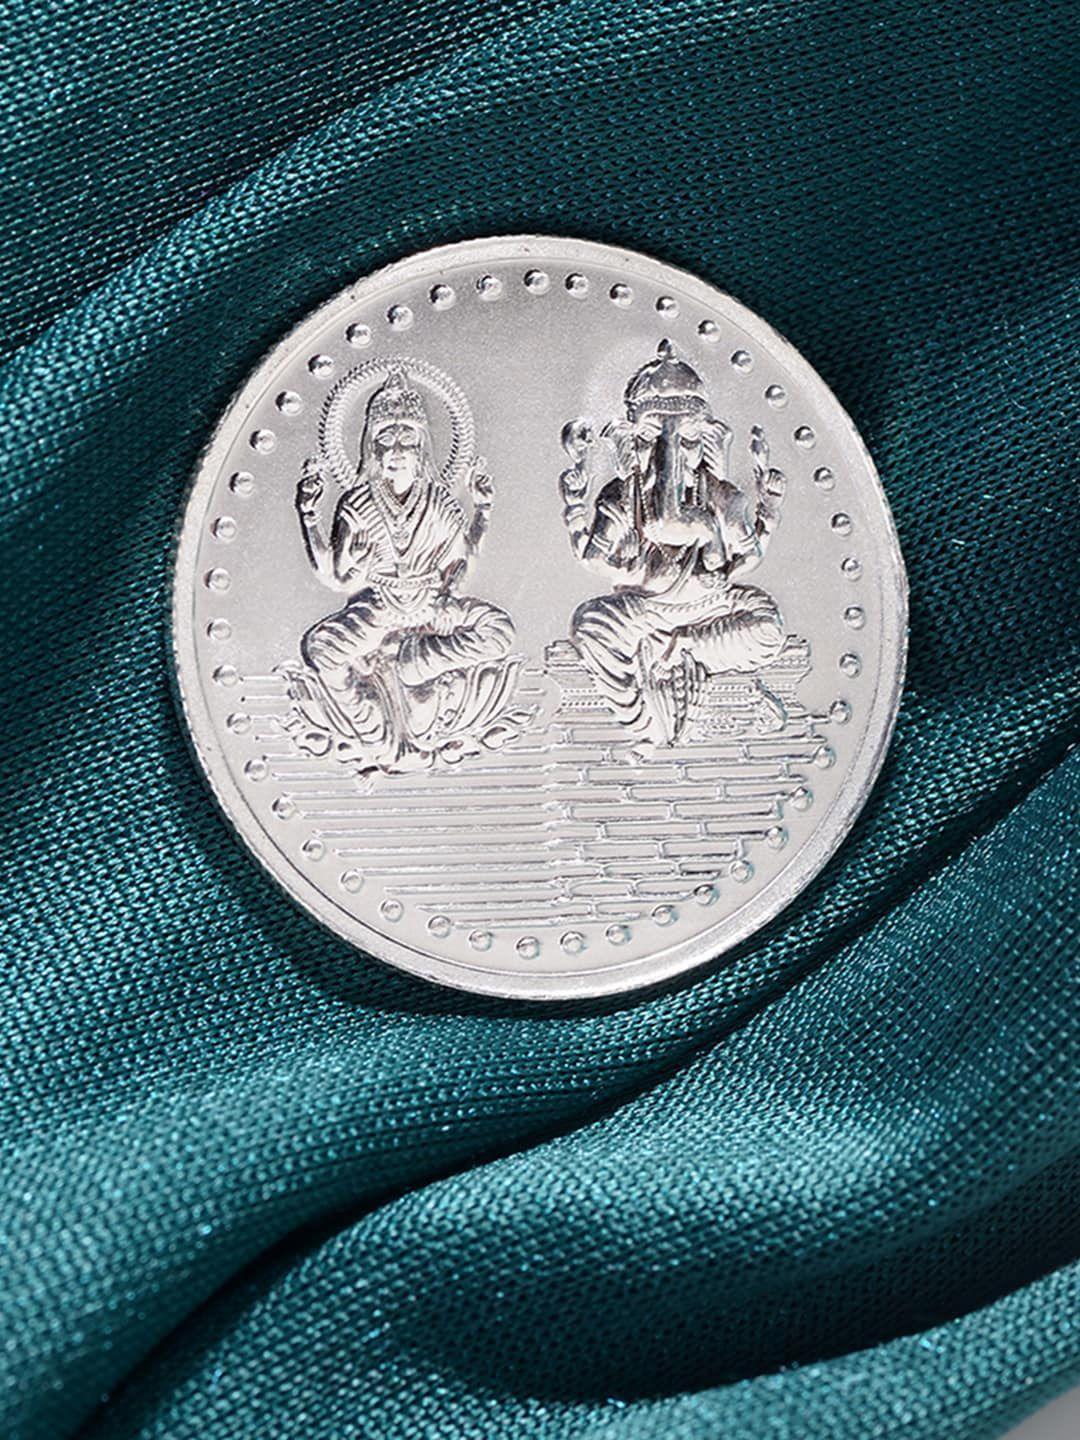 saraf rs jewellery laxmi ganesh 10gm 999 round silver coin